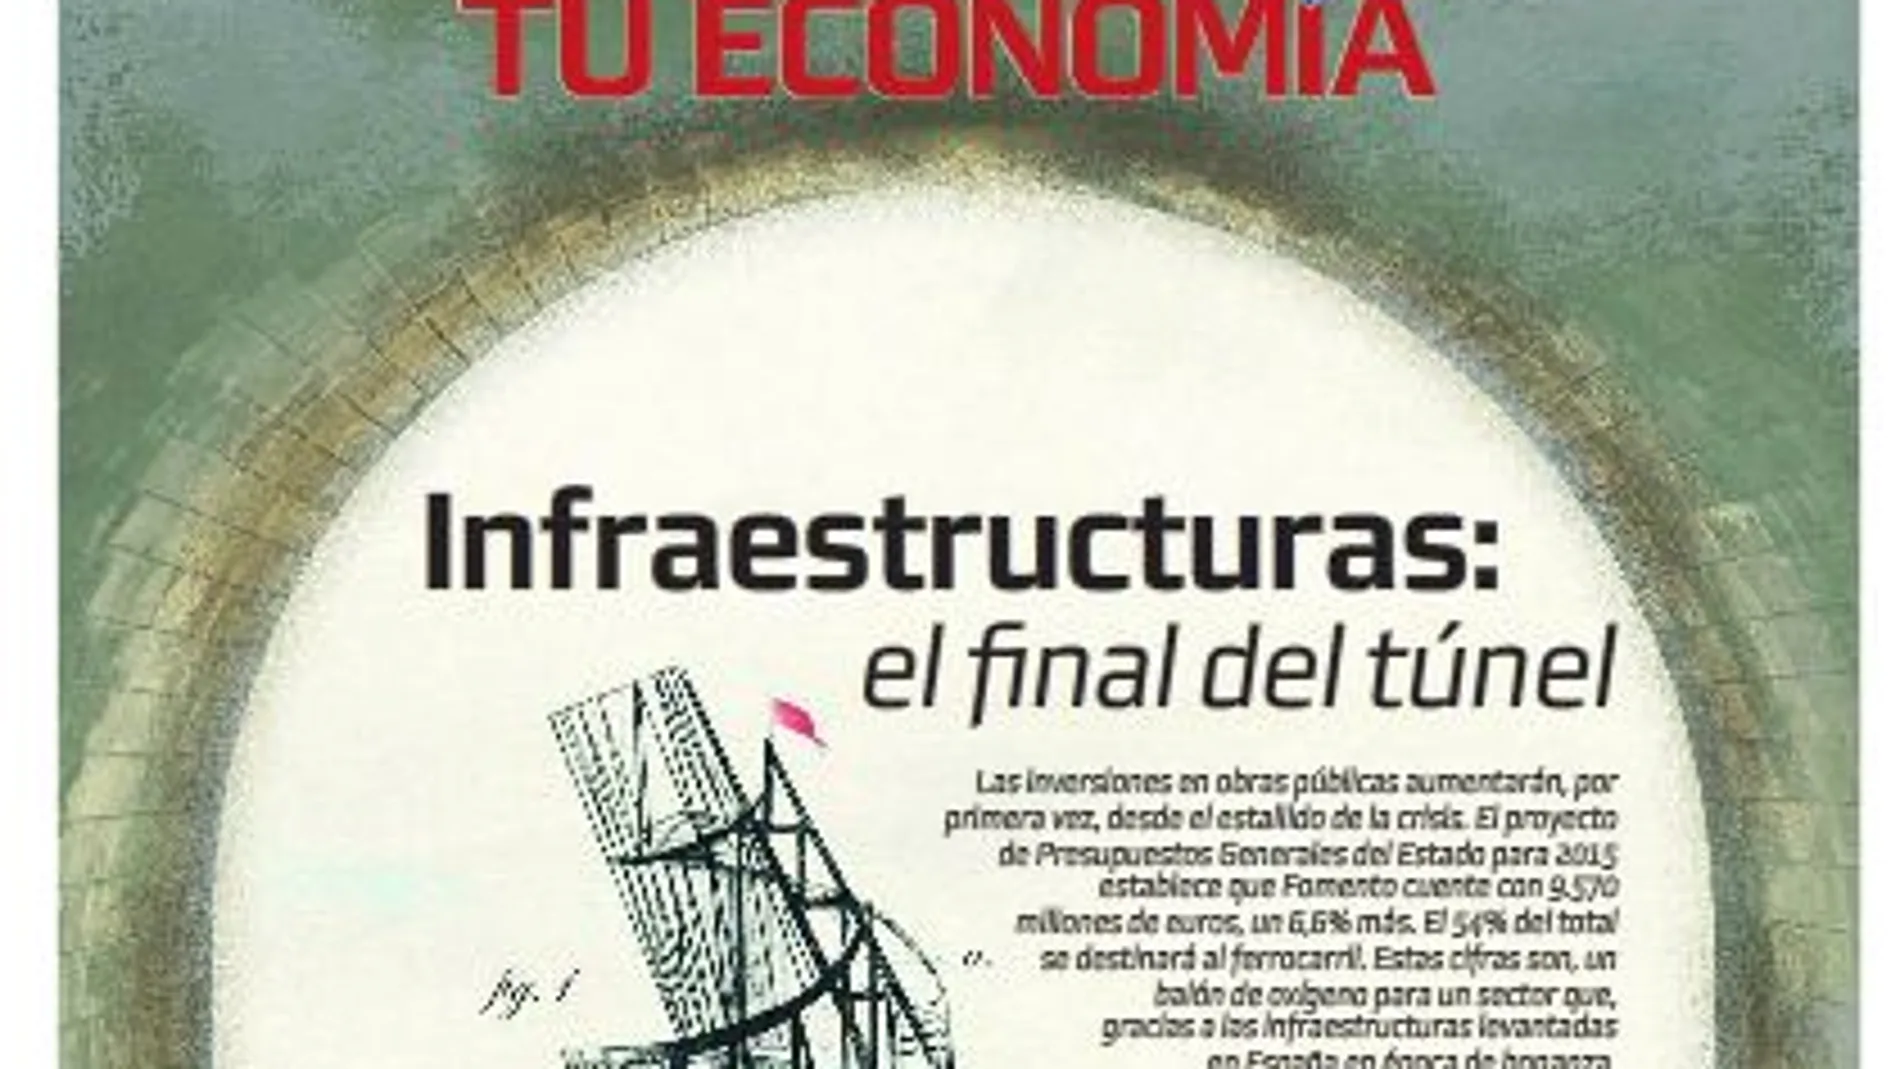 Infraestructuras: el final del túnel